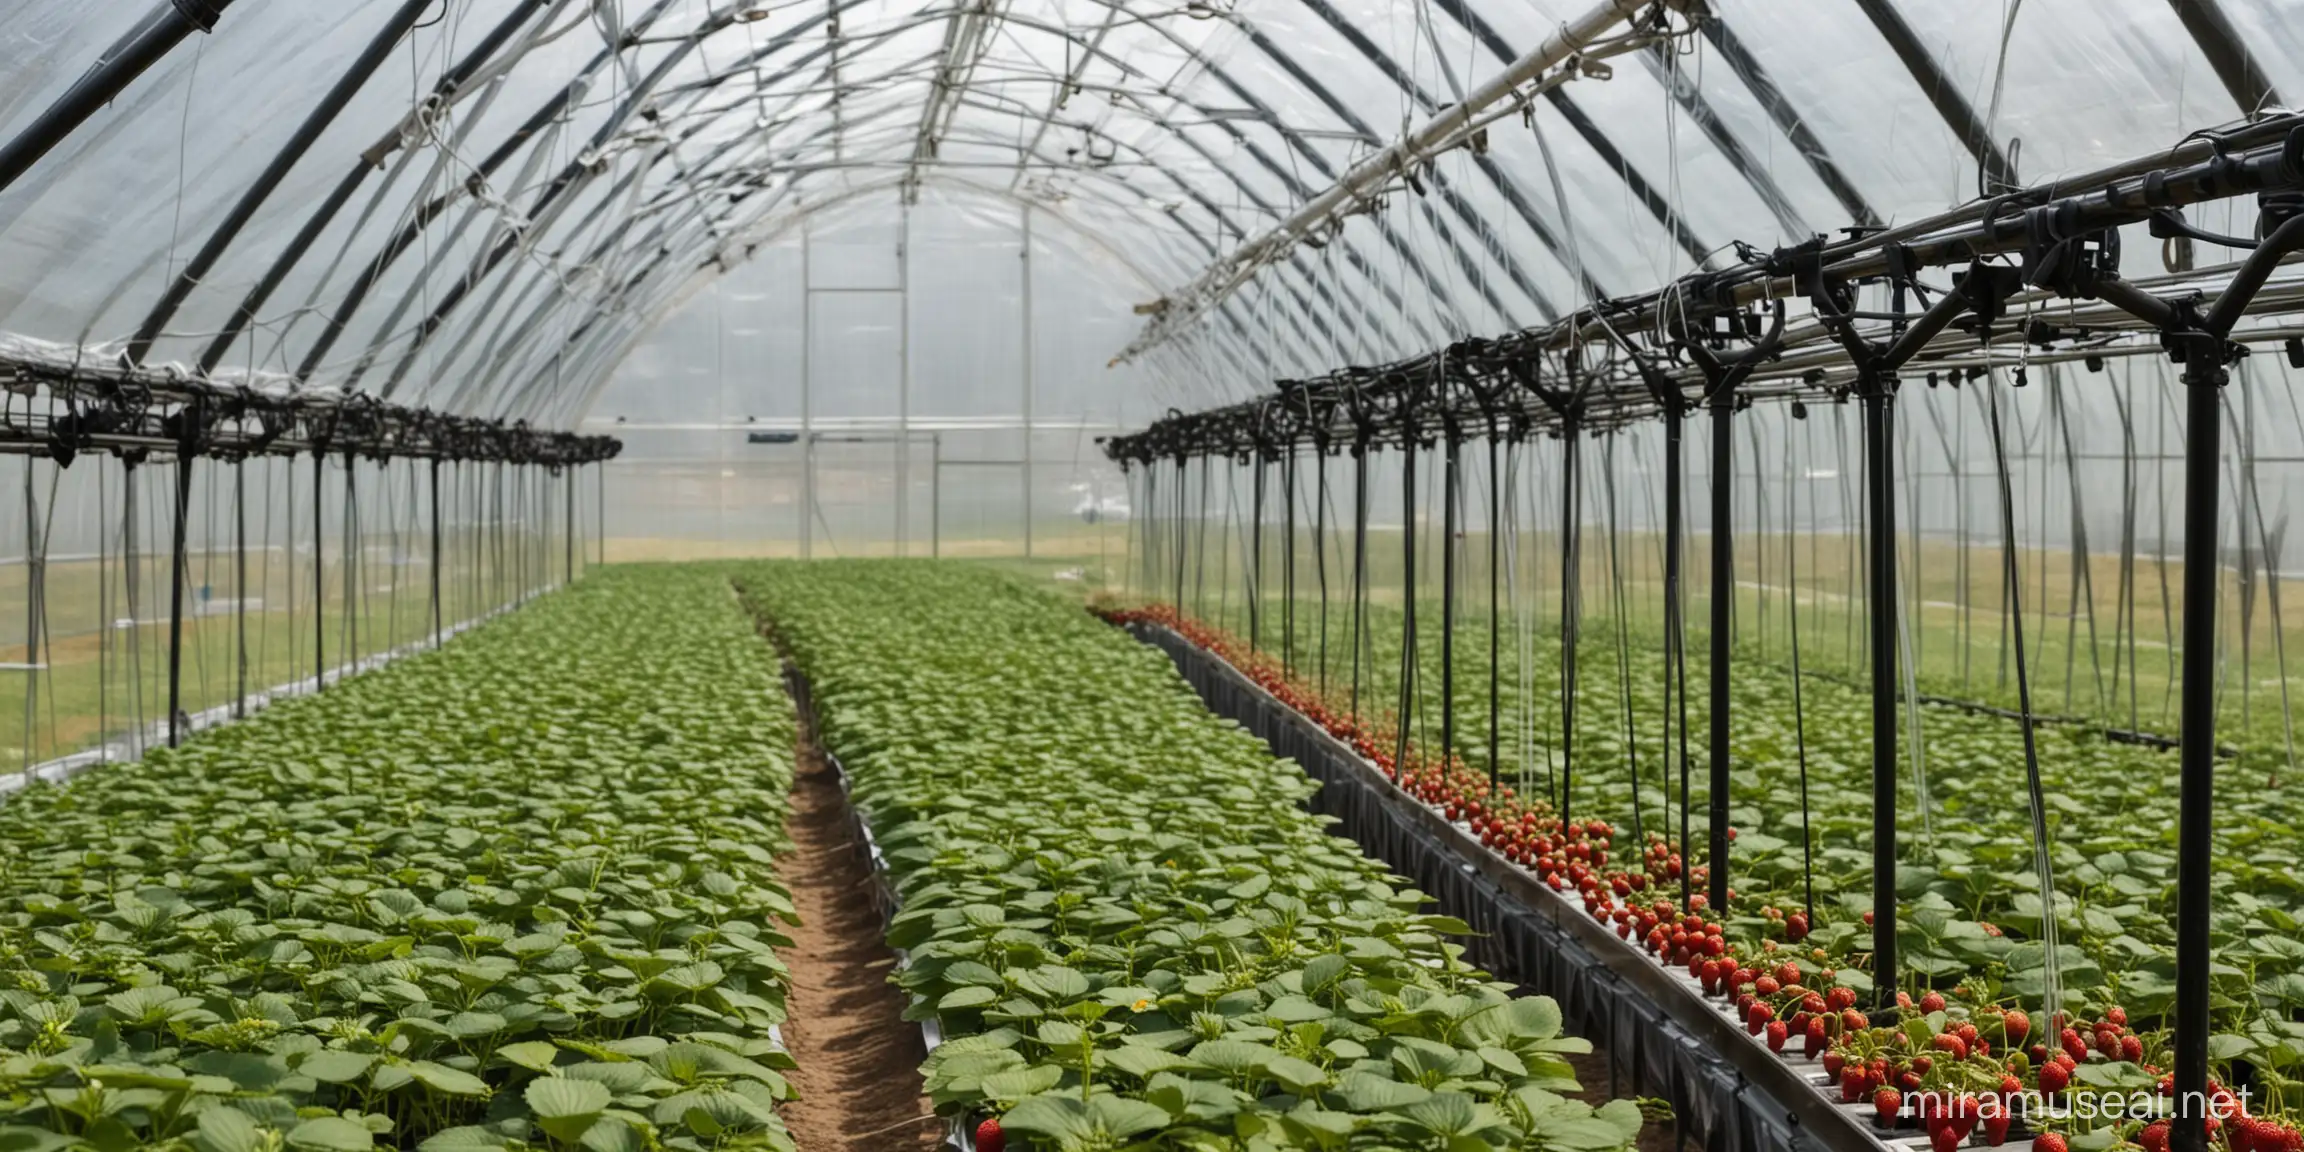 一个玻璃温室大棚内种植草莓，大棚靠玻璃板的位置有横向放置的透明管道，管道里装有黑色的液体